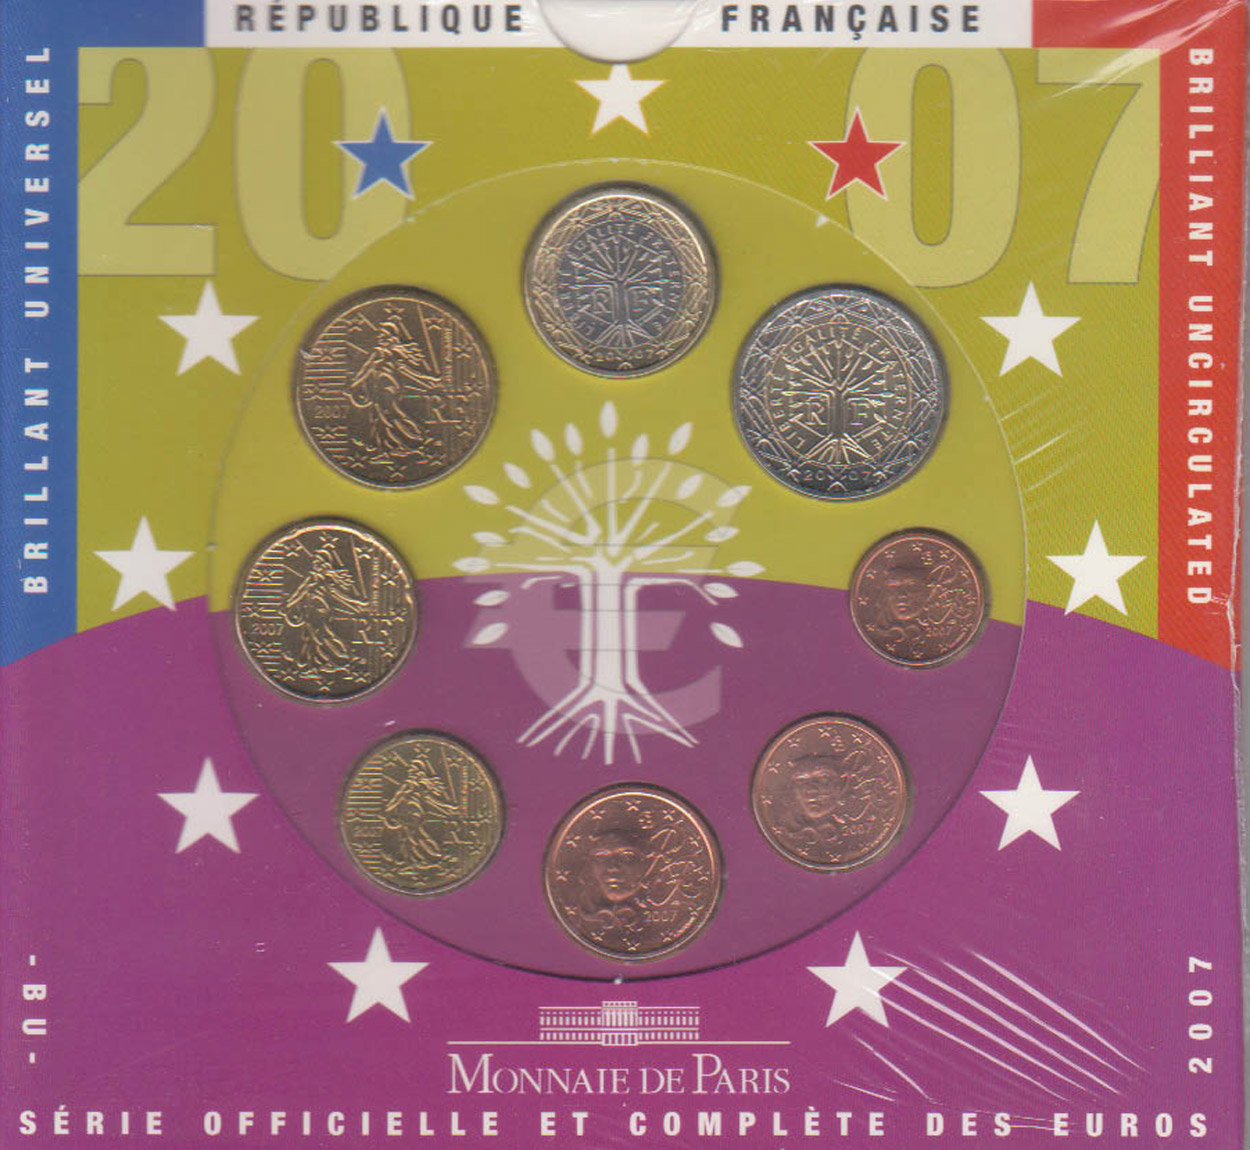  Offiz. Euo KMS Frankreich 2007 3 Münzen nur in den offiz. Foldern nur 50.000St!   